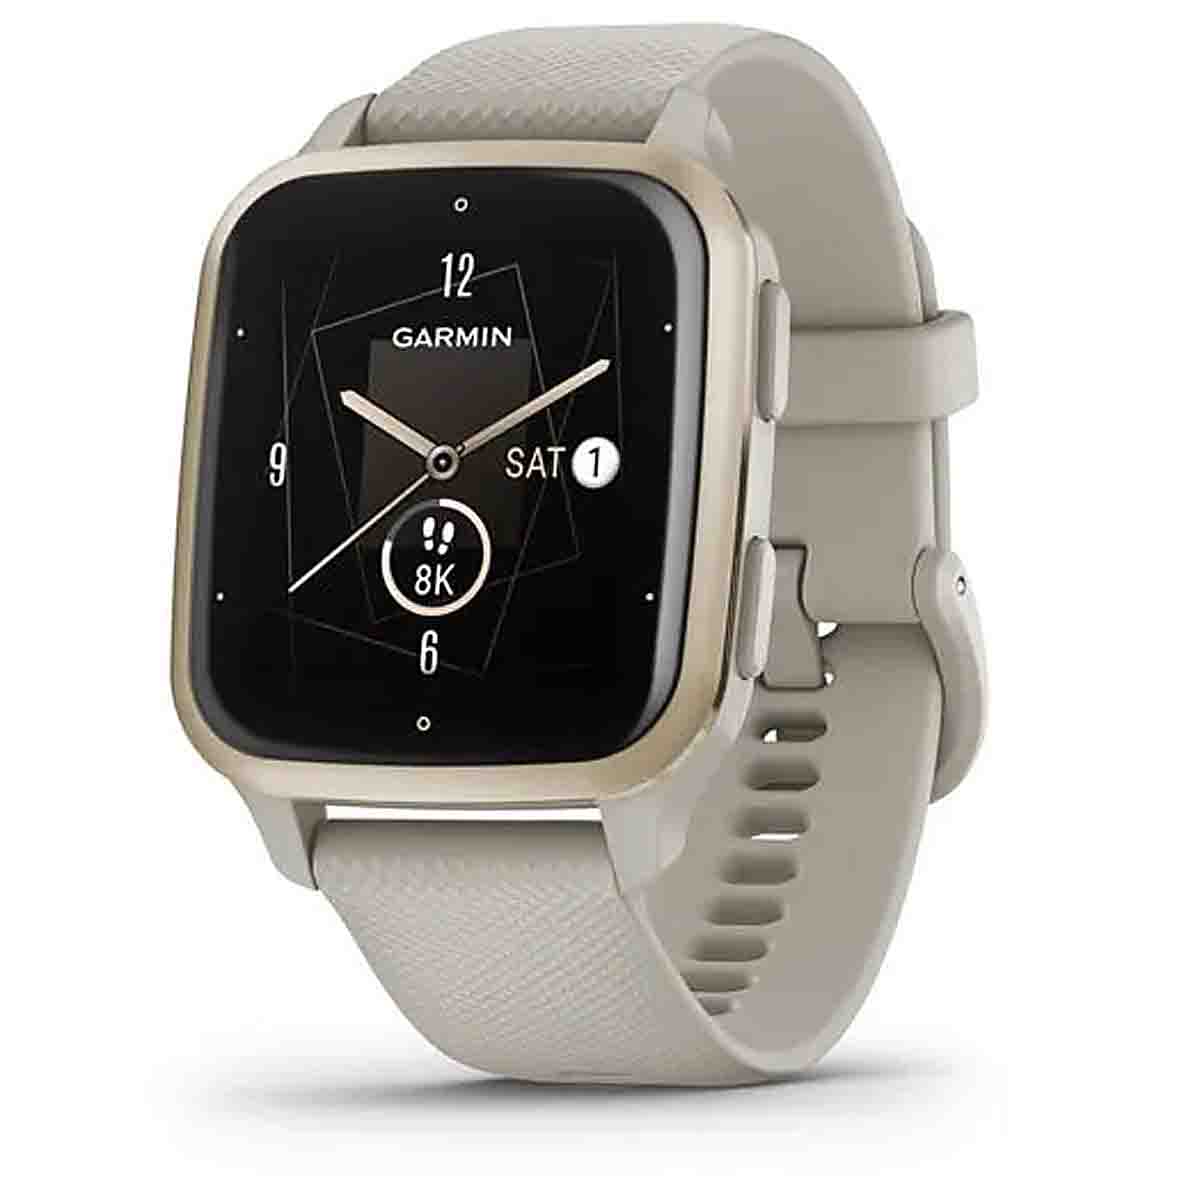 Cette montre connectée Garmin profite d'une offre à ne pas manquer